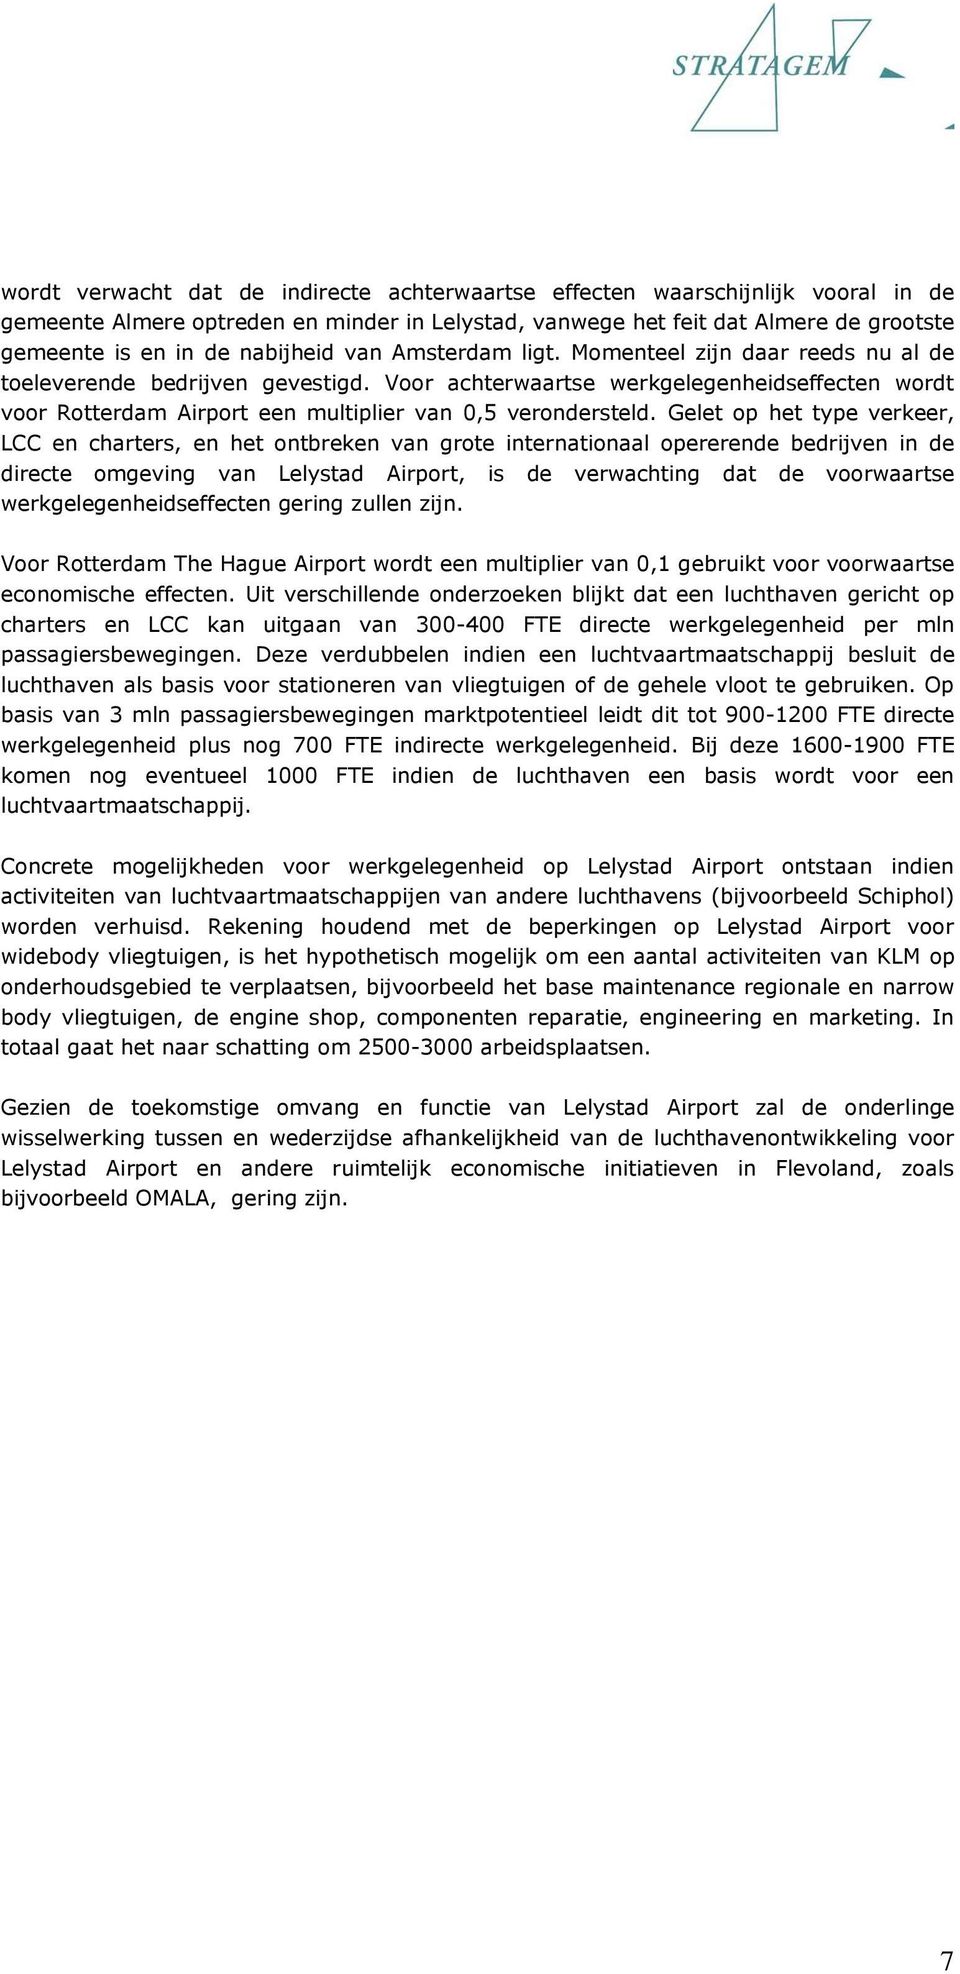 Voor achterwaartse werkgelegenheidseffecten wordt voor Rotterdam Airport een multiplier van 0,5 verondersteld.